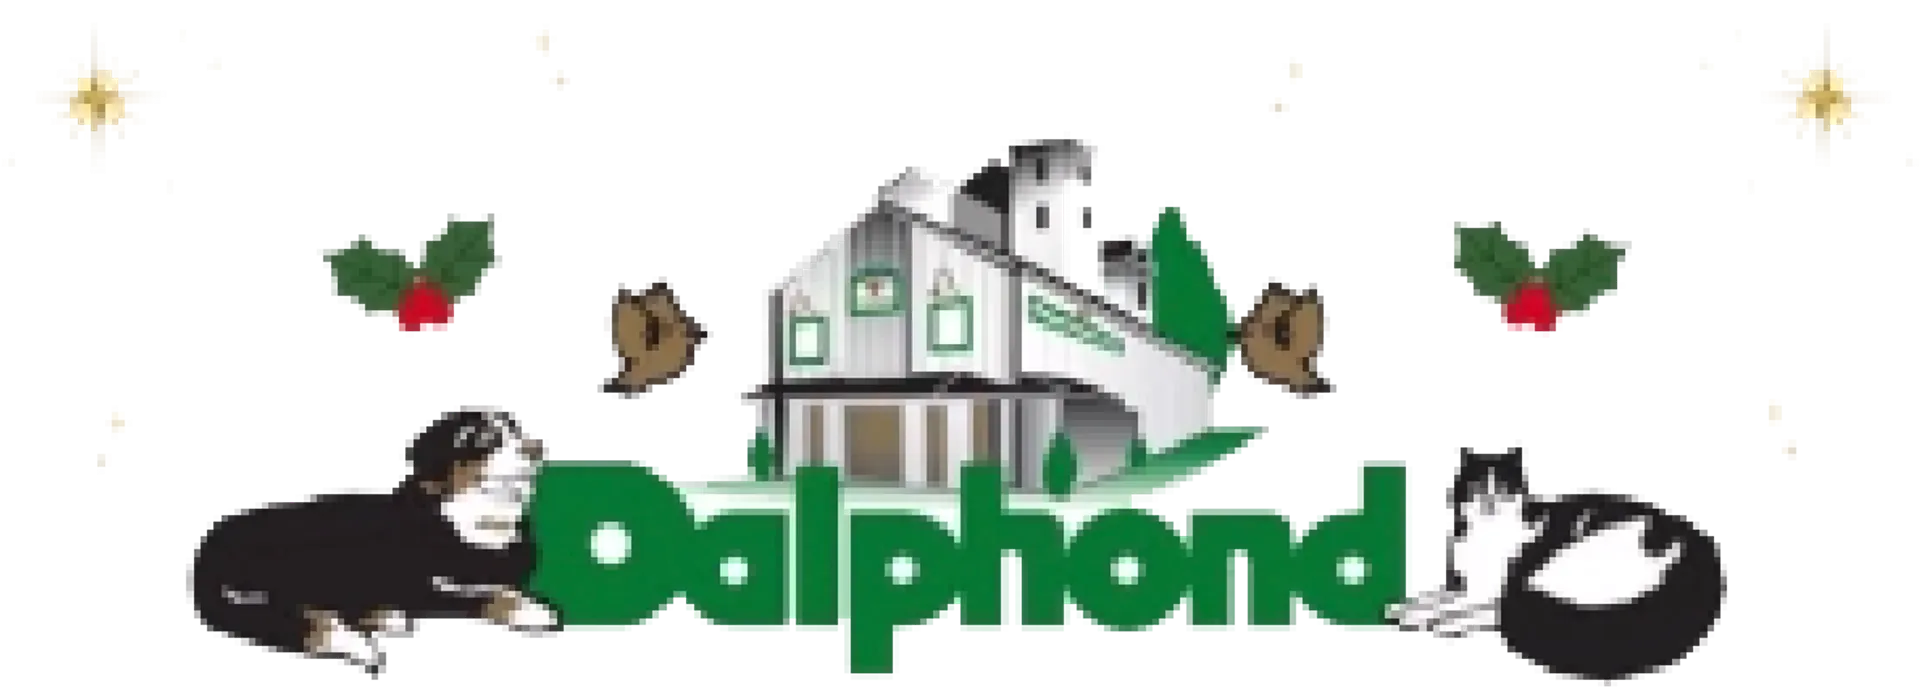 DALPHOND logo de circulaires